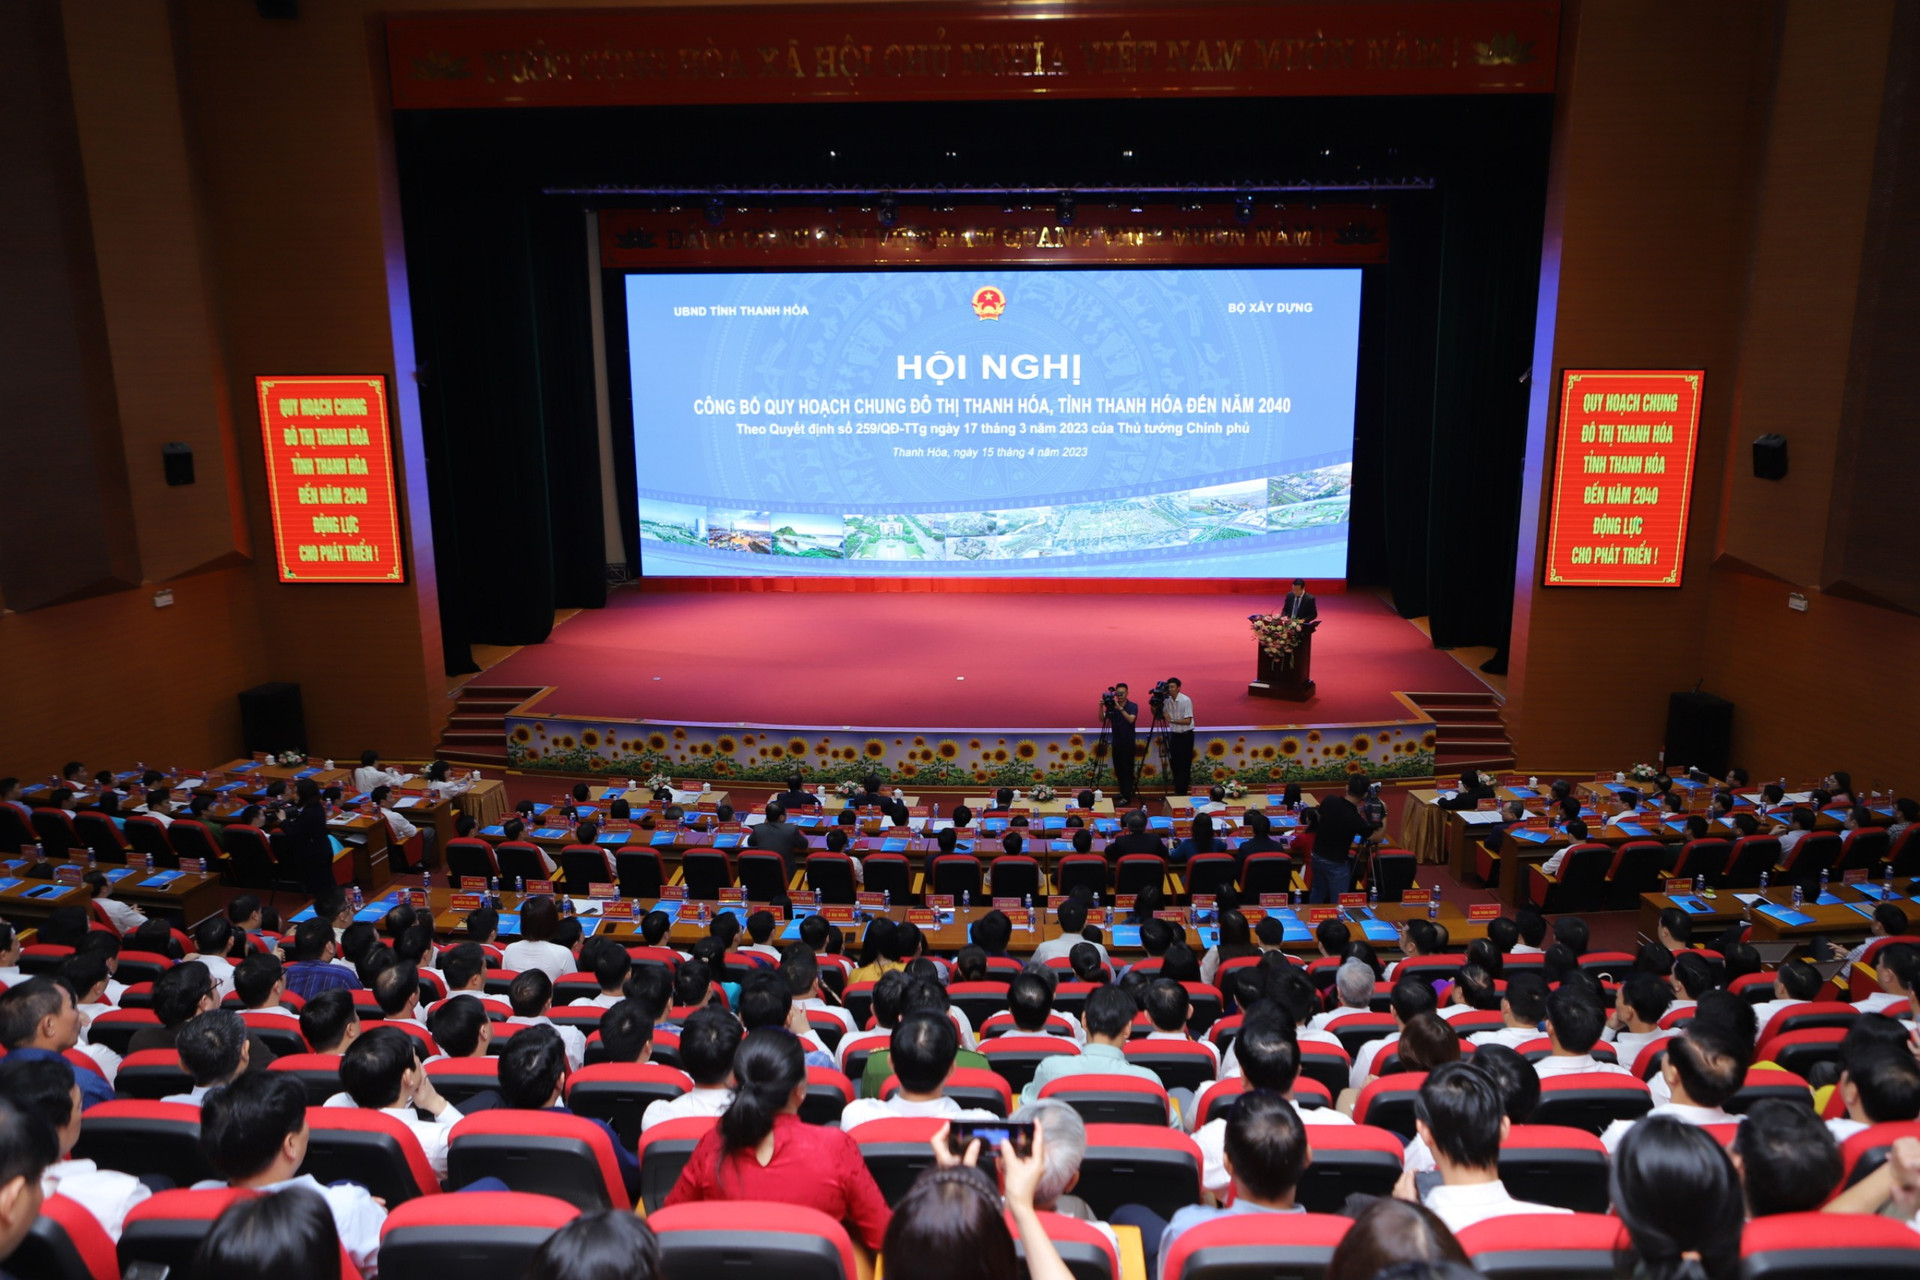 Công bố Quy hoạch chung đô thị Thanh Hóa, tỉnh Thanh Hóa đến năm 2040.